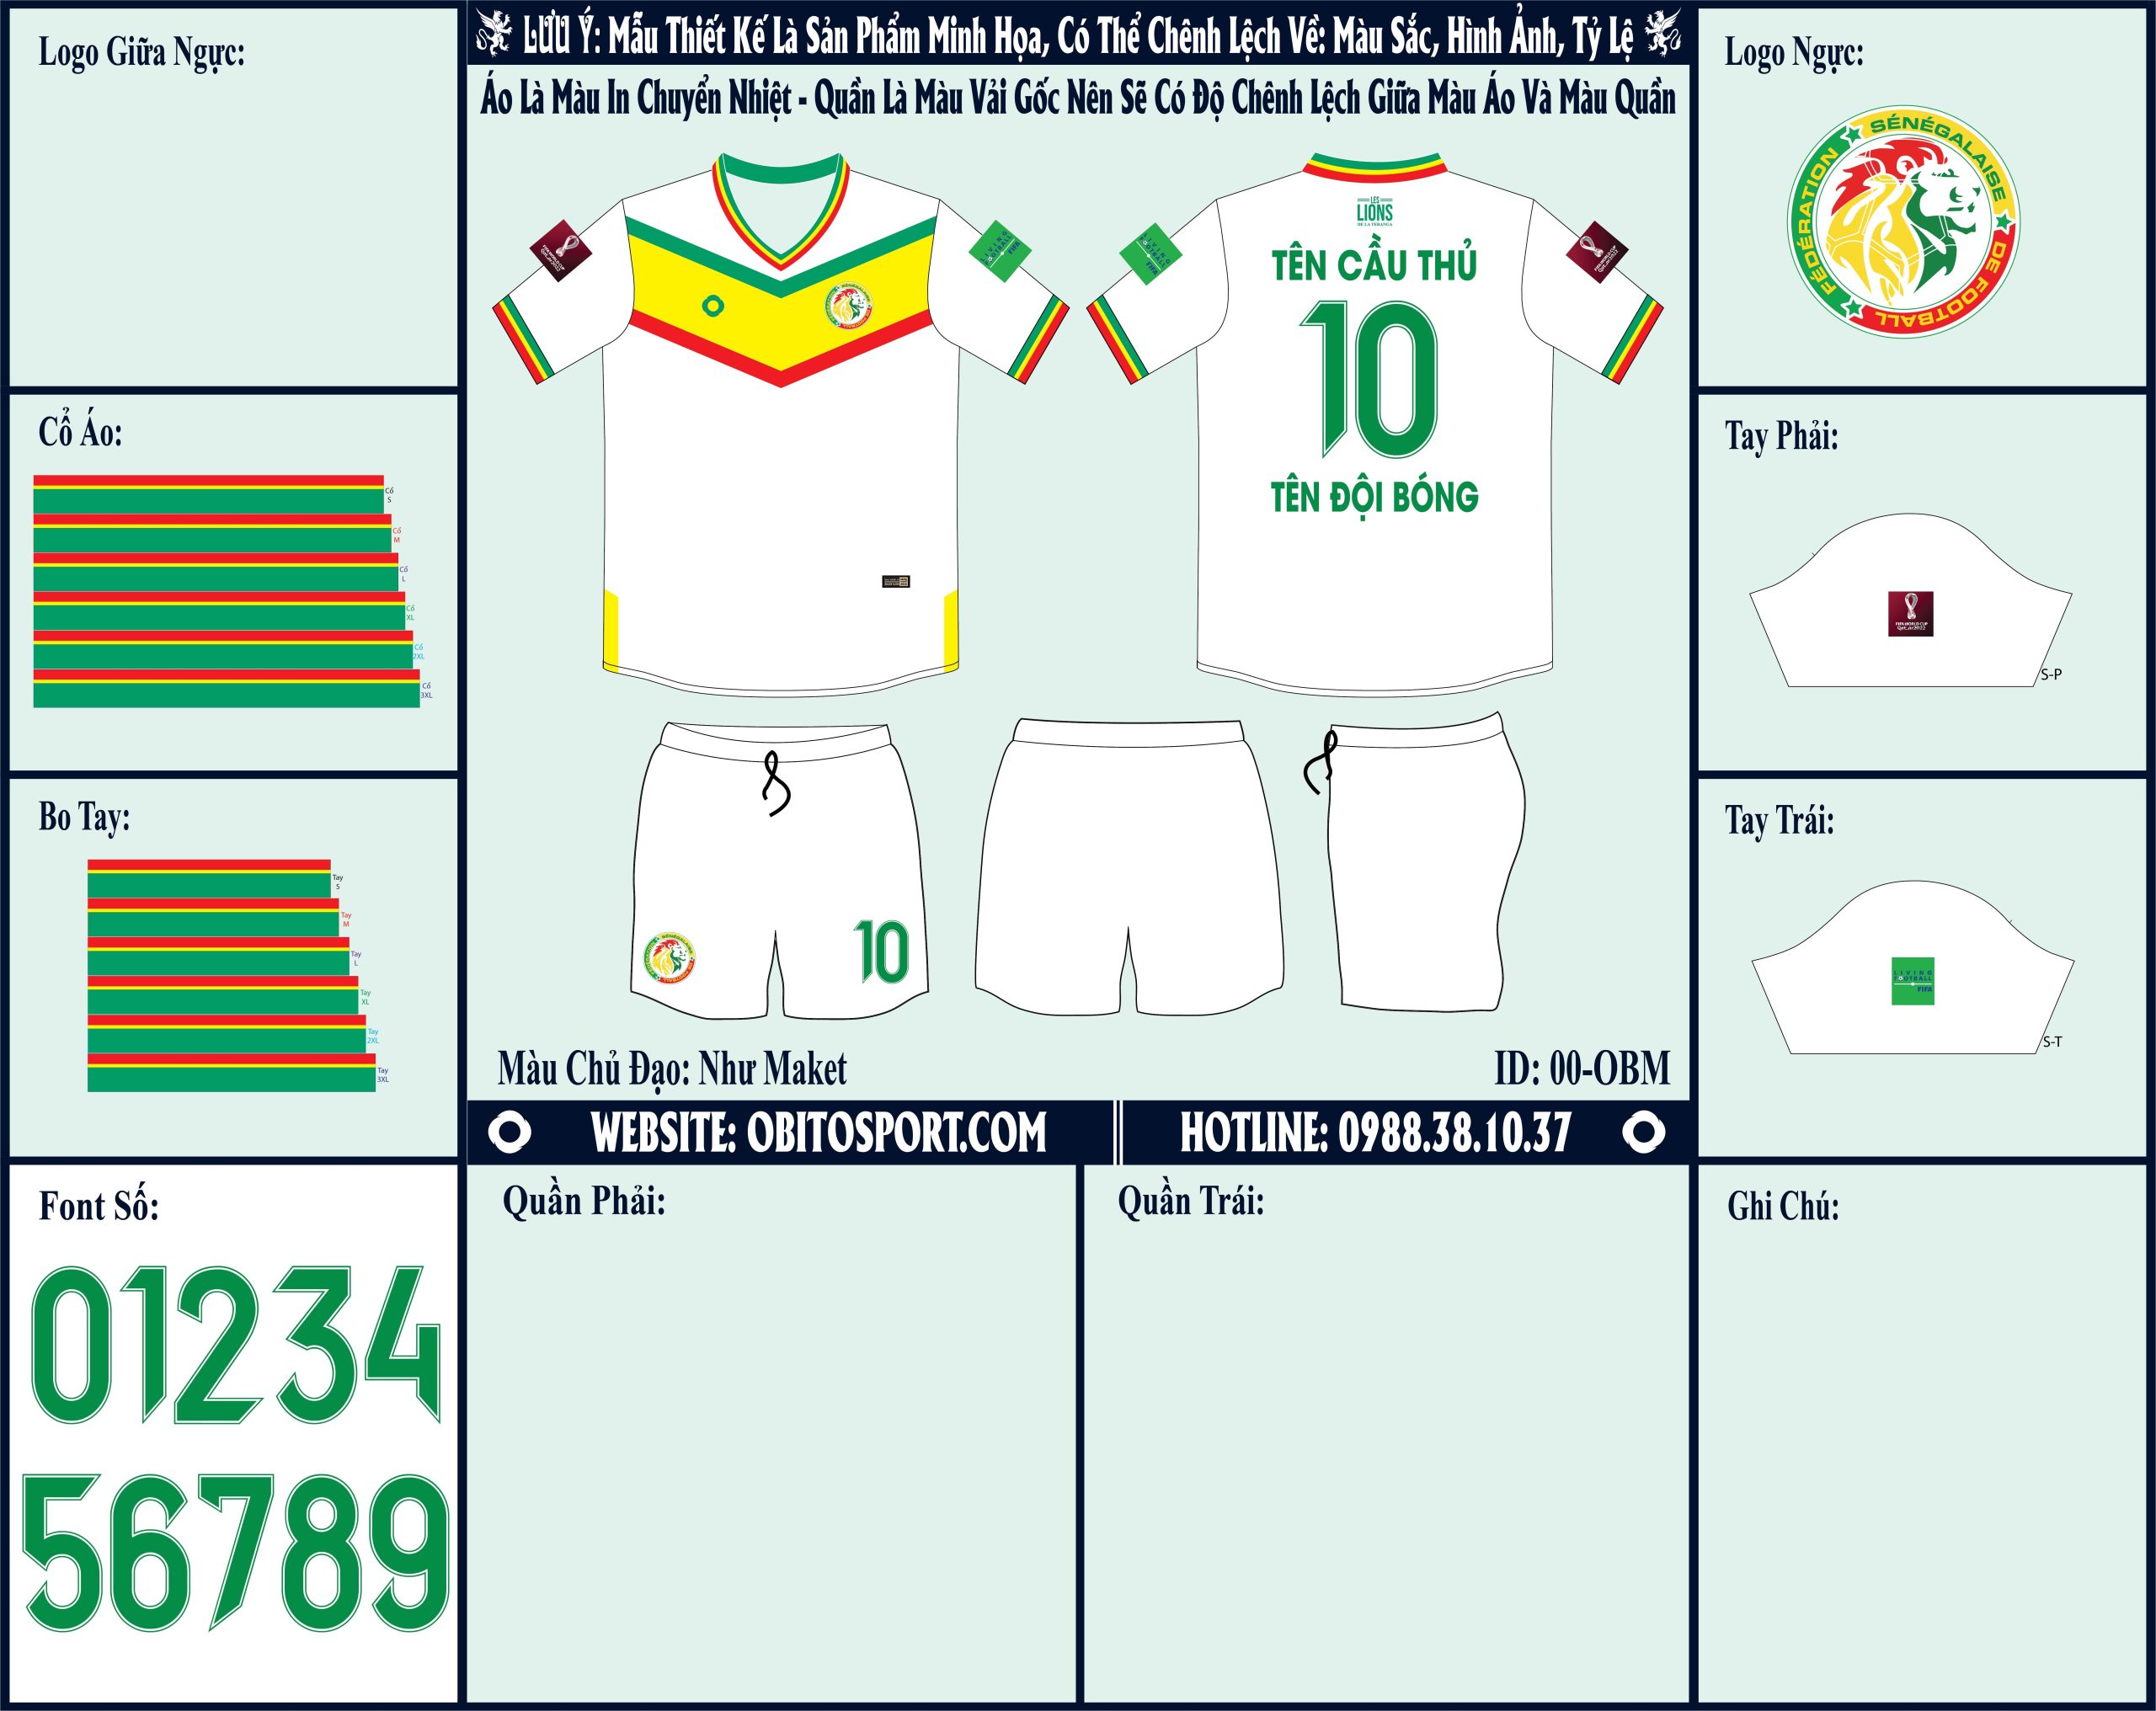 Để giúp cho khách hàng hiểu hơn về sự chênh lệch hình ảnh thiết kế và sau khi may xong. Chúng tôi giới thiệu đến mọi người Mẫu ảnh áo đội tuyển Senegal sân nhà World Cup 2022 Market . Chắc chắn bạn sẽ hài lòng về hình ảnh này. 